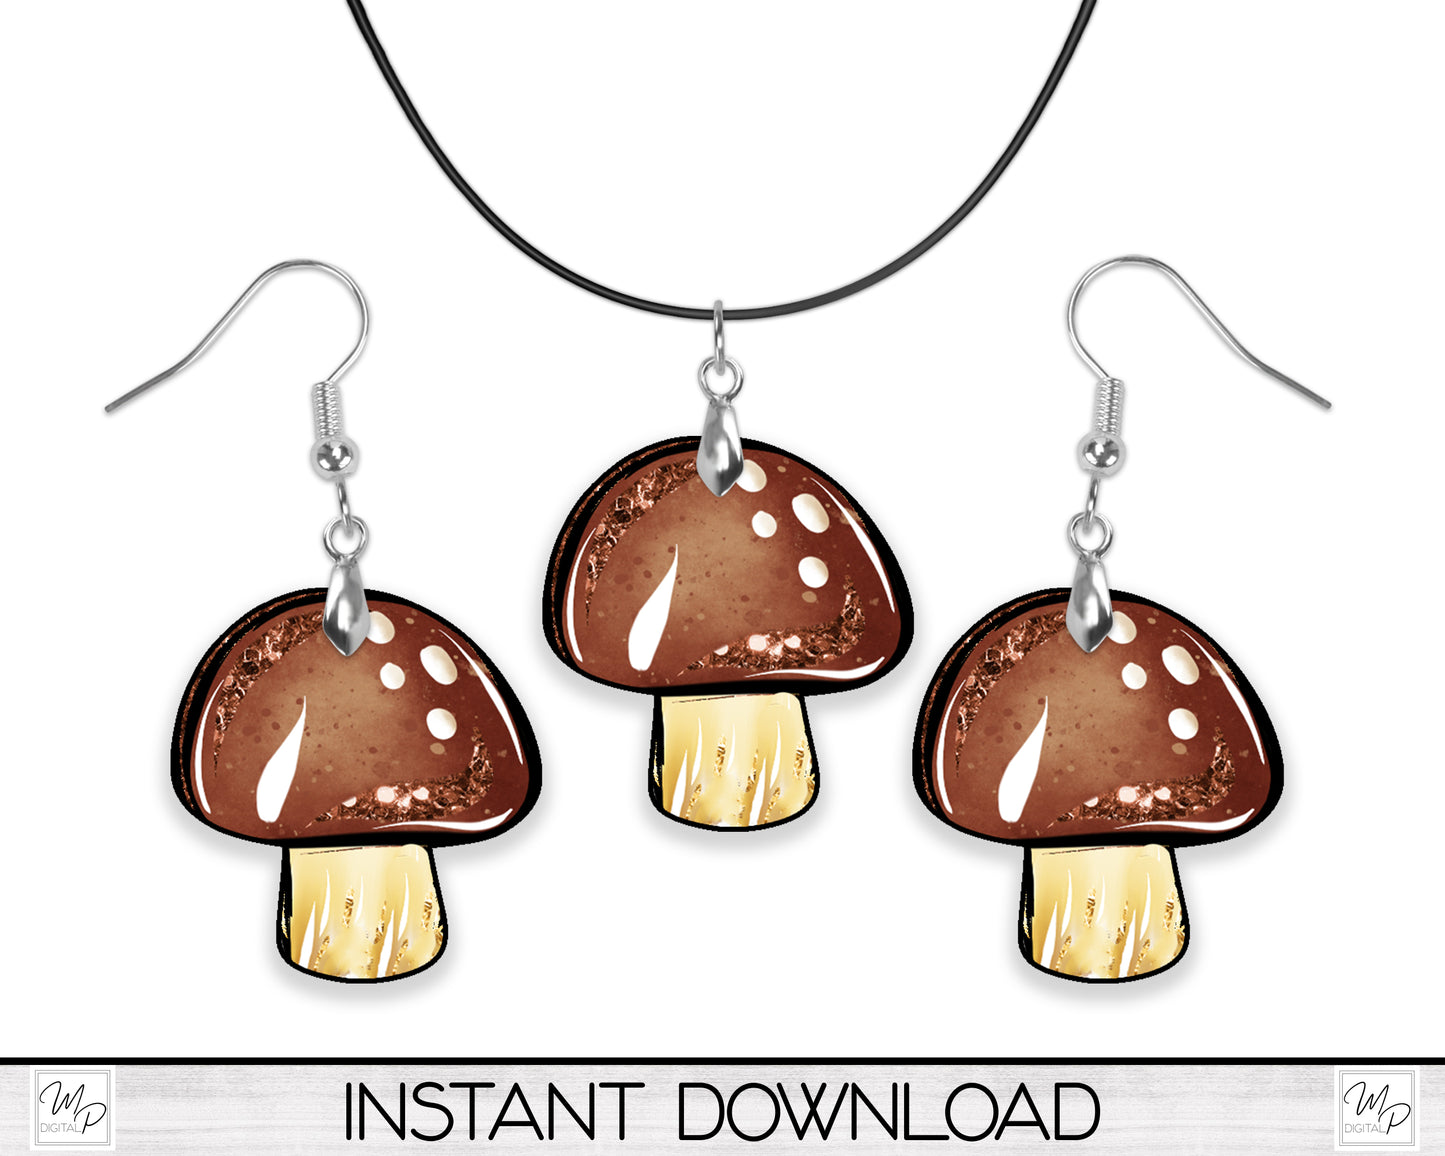 Mushroom Earring PNG Design for Sublimation, Digital Download